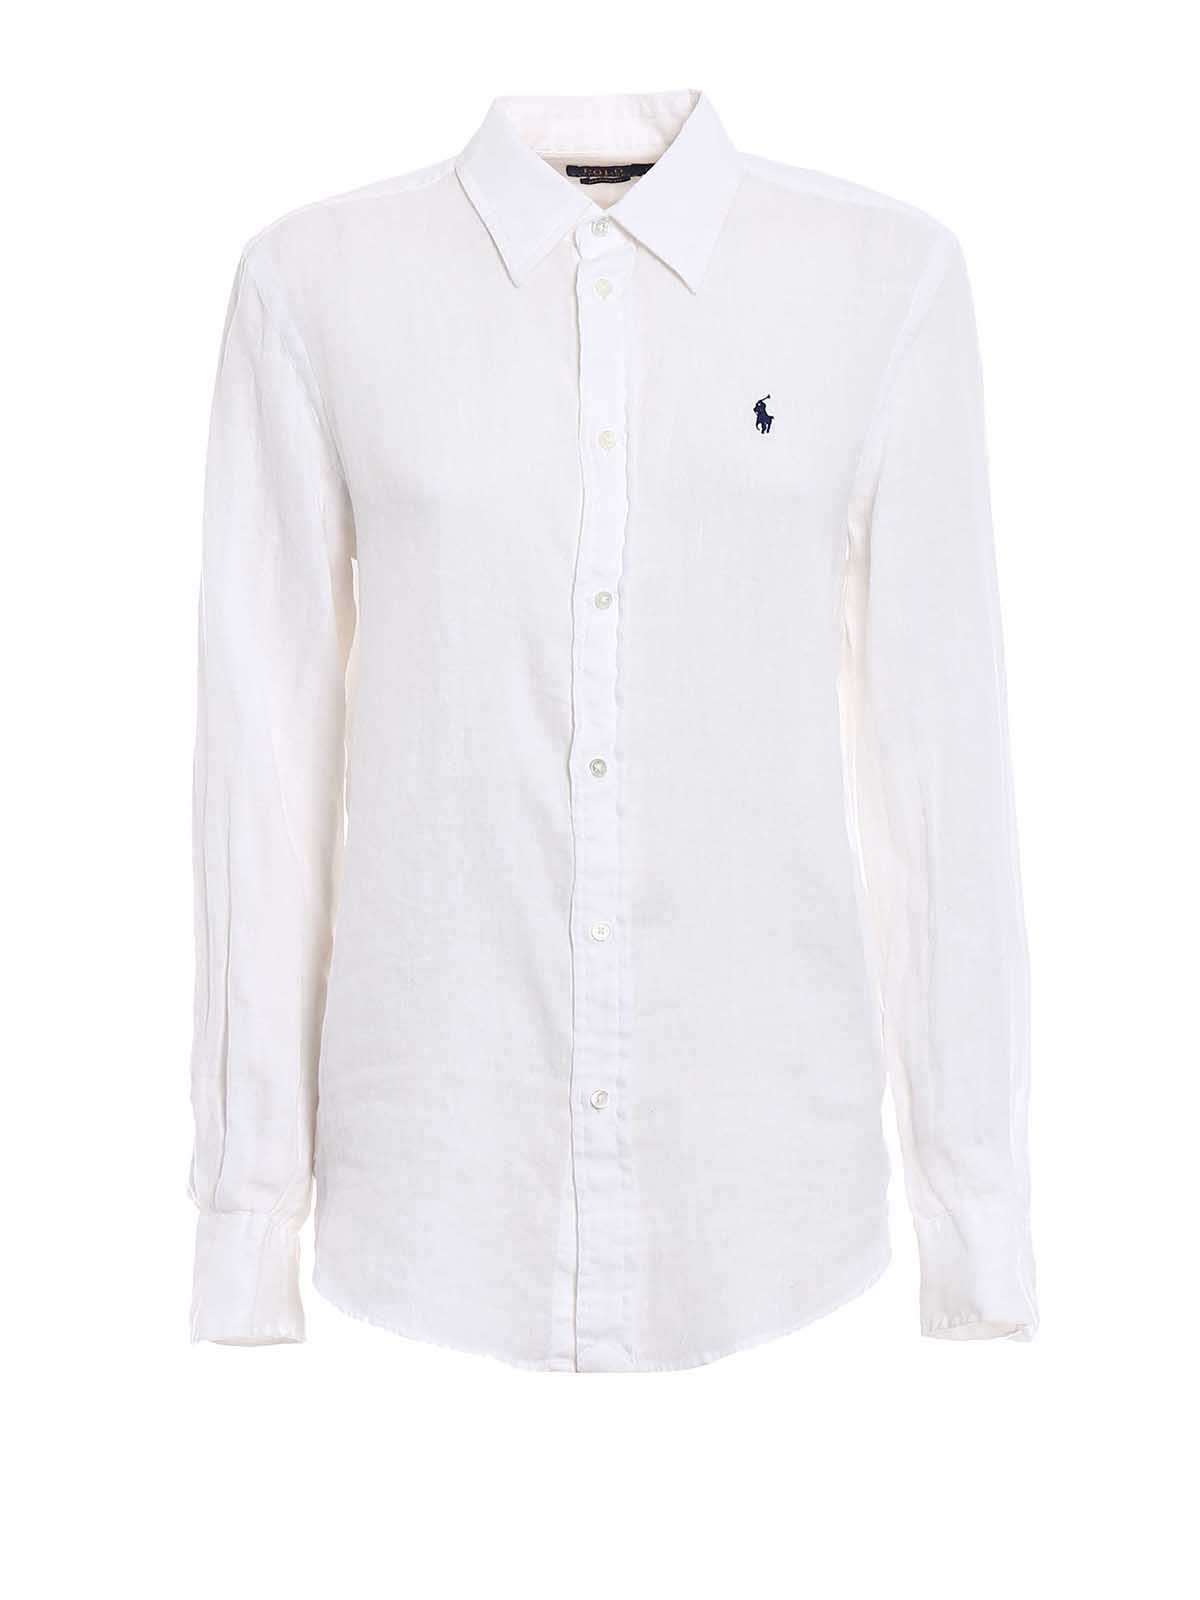 Shirts Polo Ralph Lauren - White linen shirt - 211697461001 | iKRIX.com